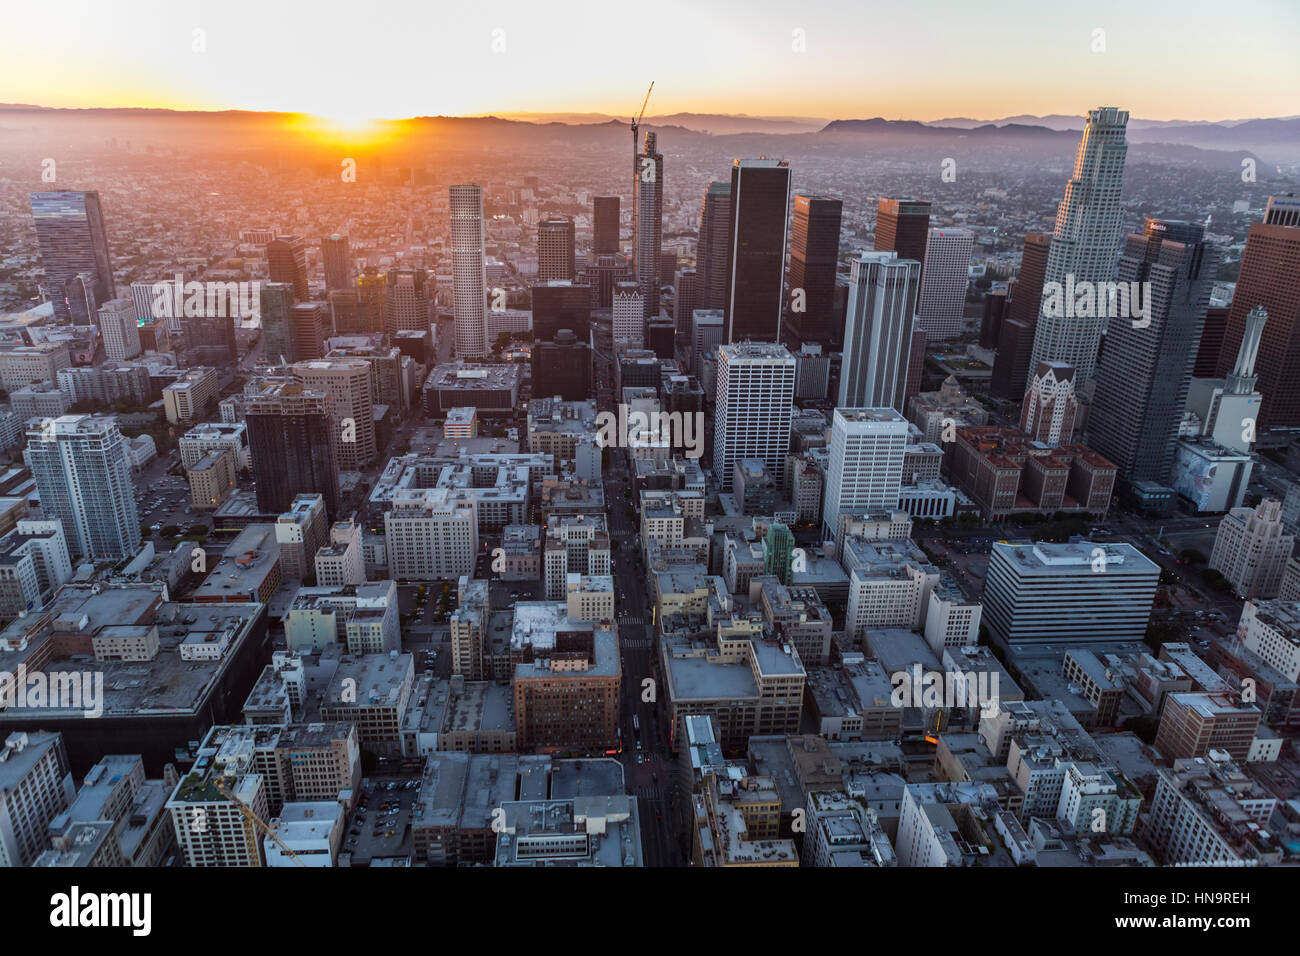 Los Angeles, California, Stati Uniti d'America - 21 Luglio 2016: antenna al tramonto del centro cittadino di Los Angeles. Foto Stock